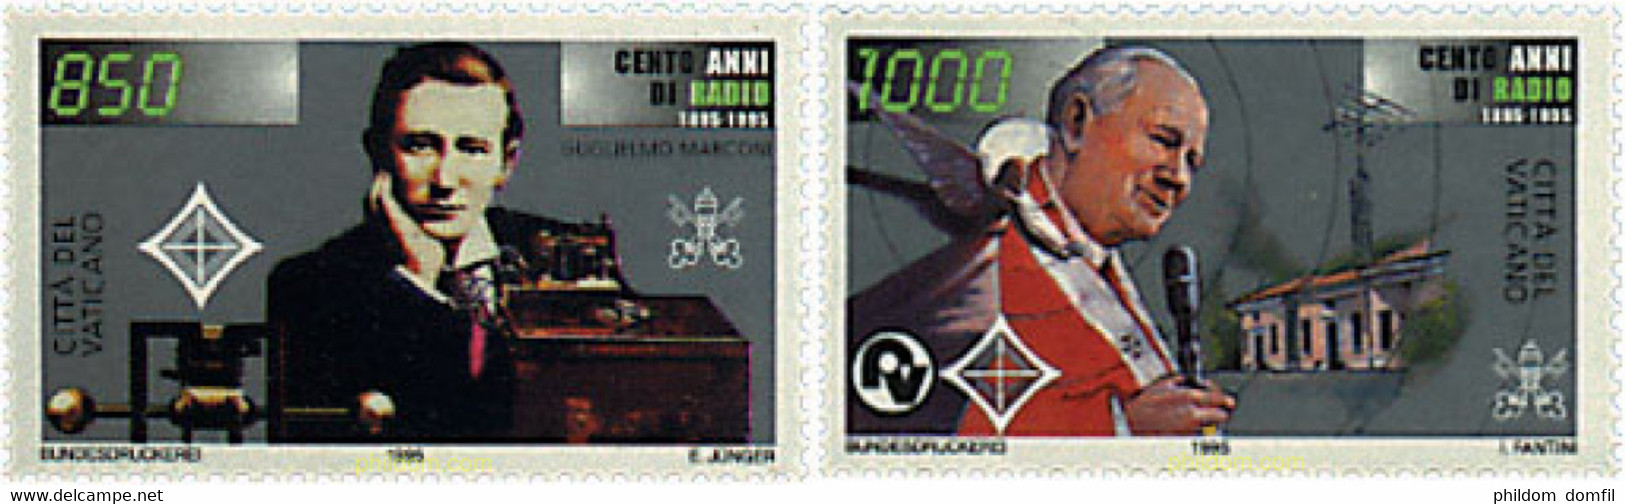 30694 MNH VATICANO 1995 CENTENARIO DE LA RADIO - Used Stamps